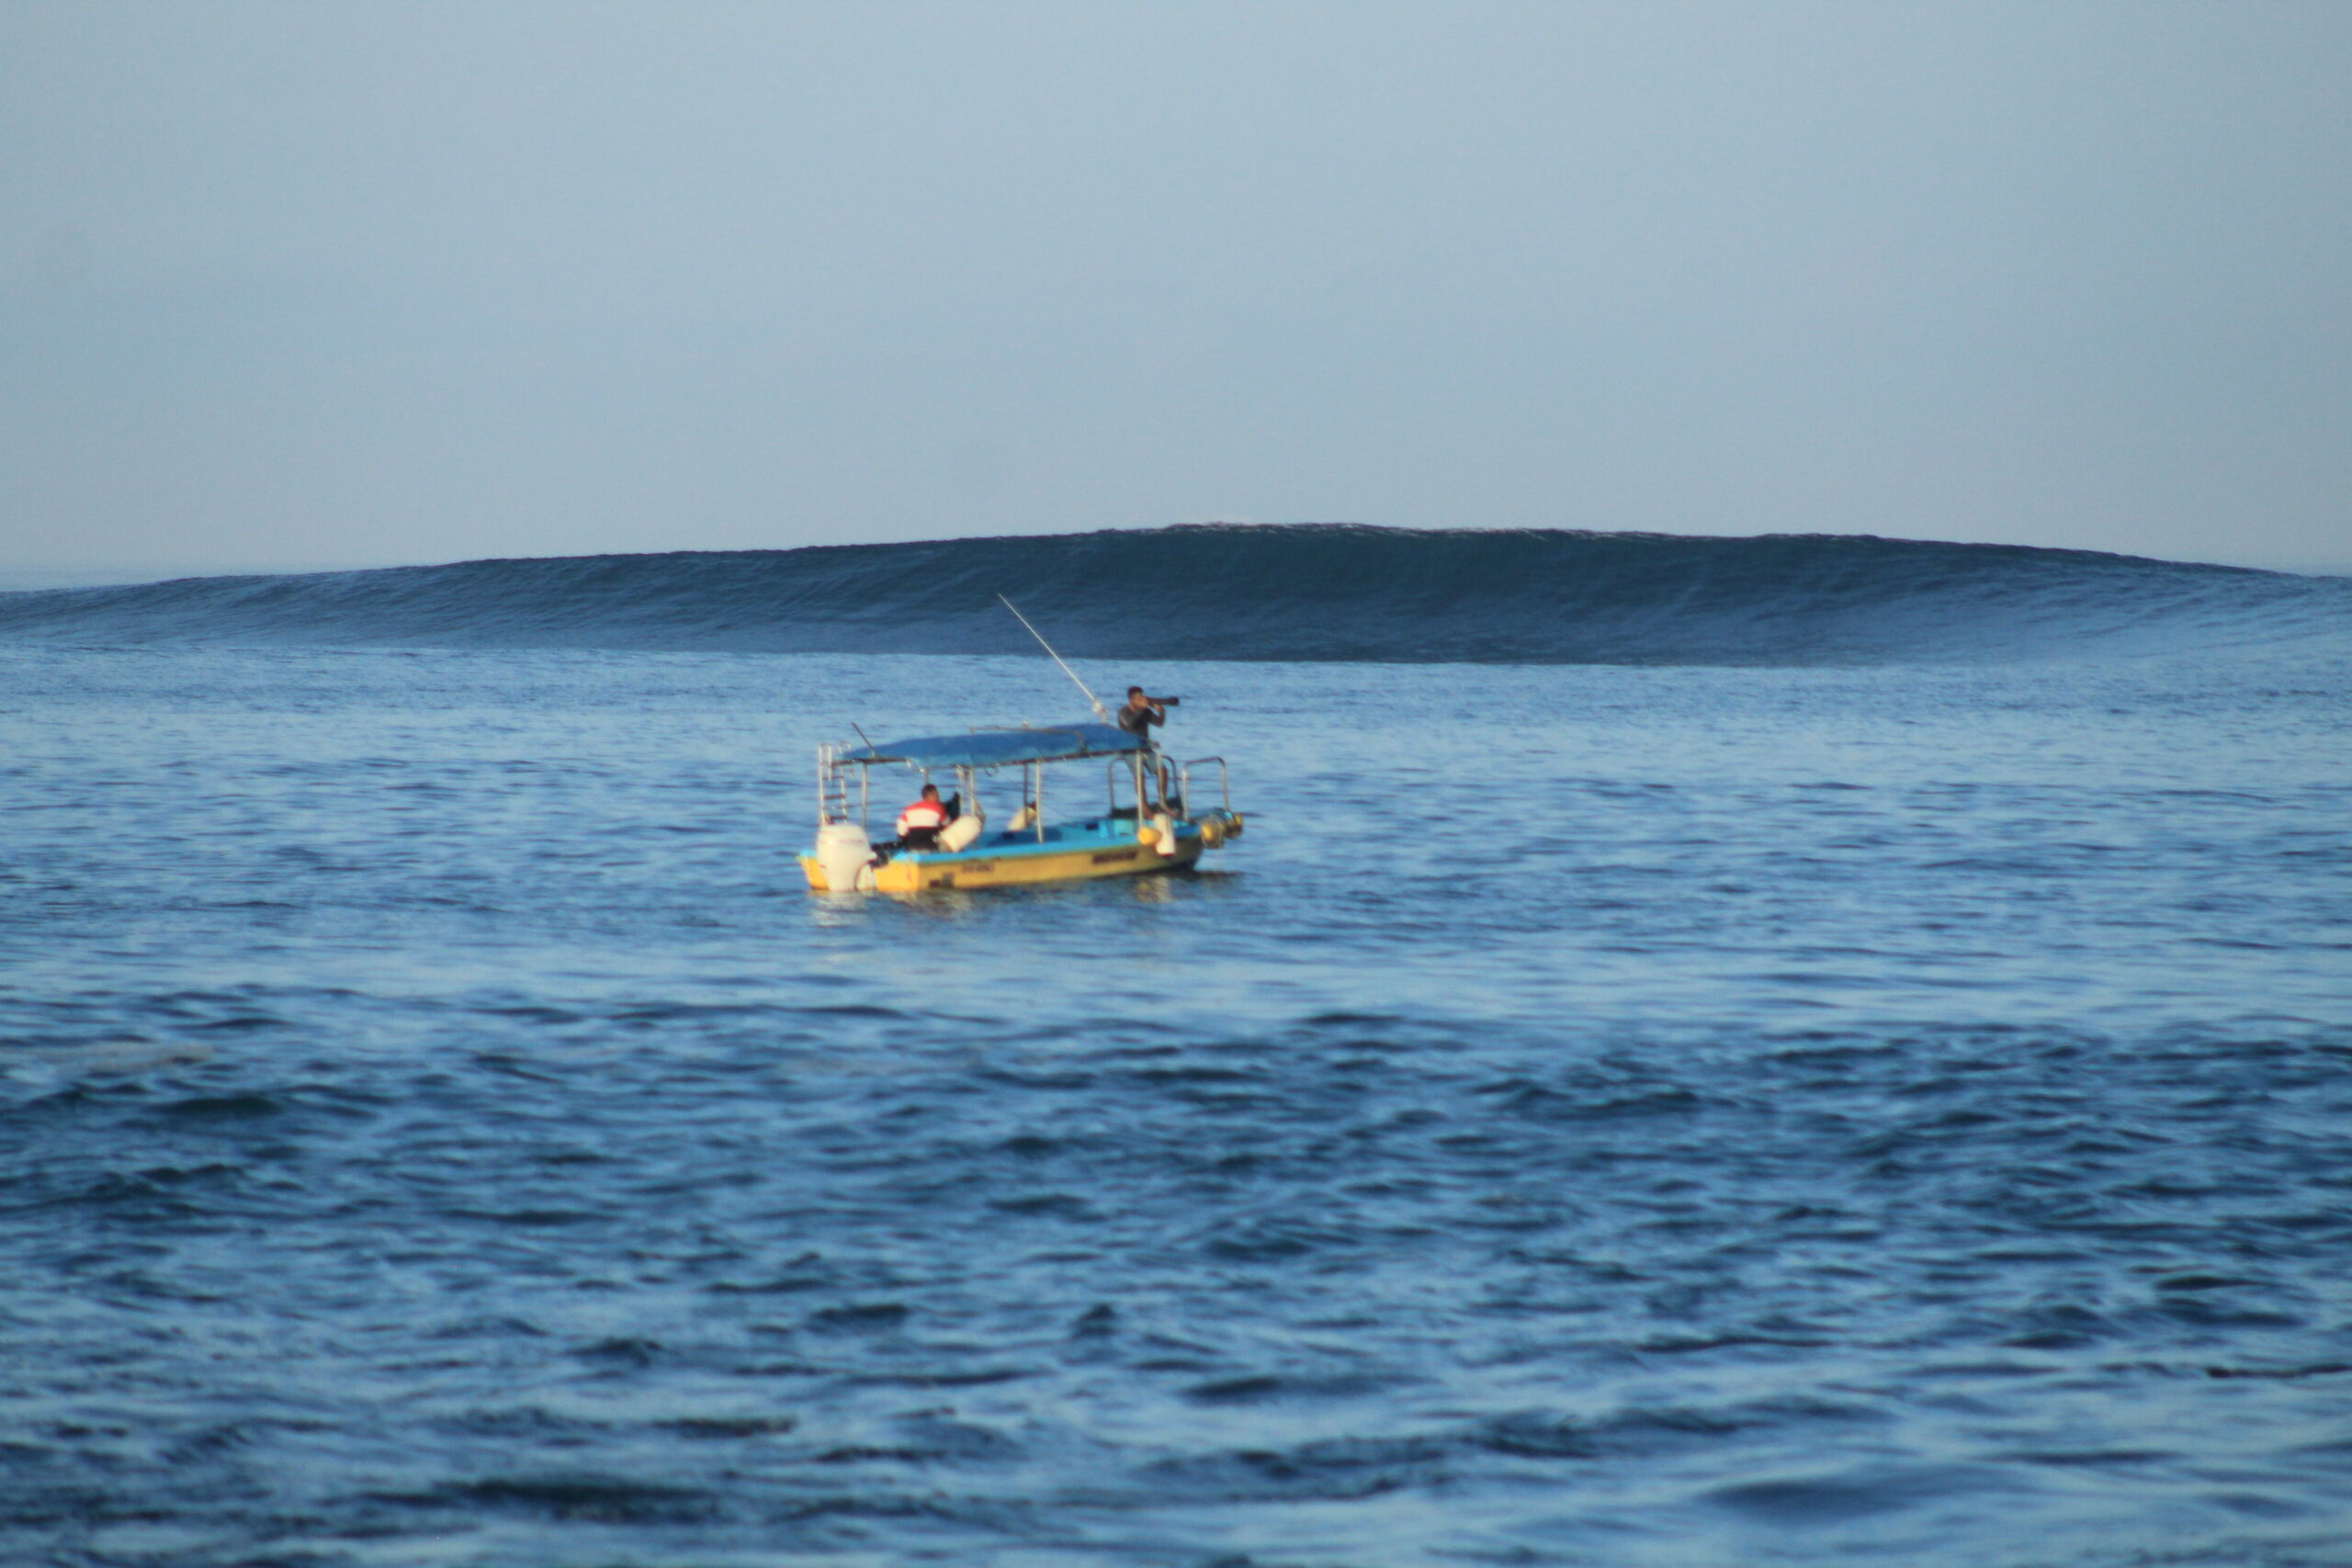 water taxi at Punta Carola, San Cristobal, Galapagos